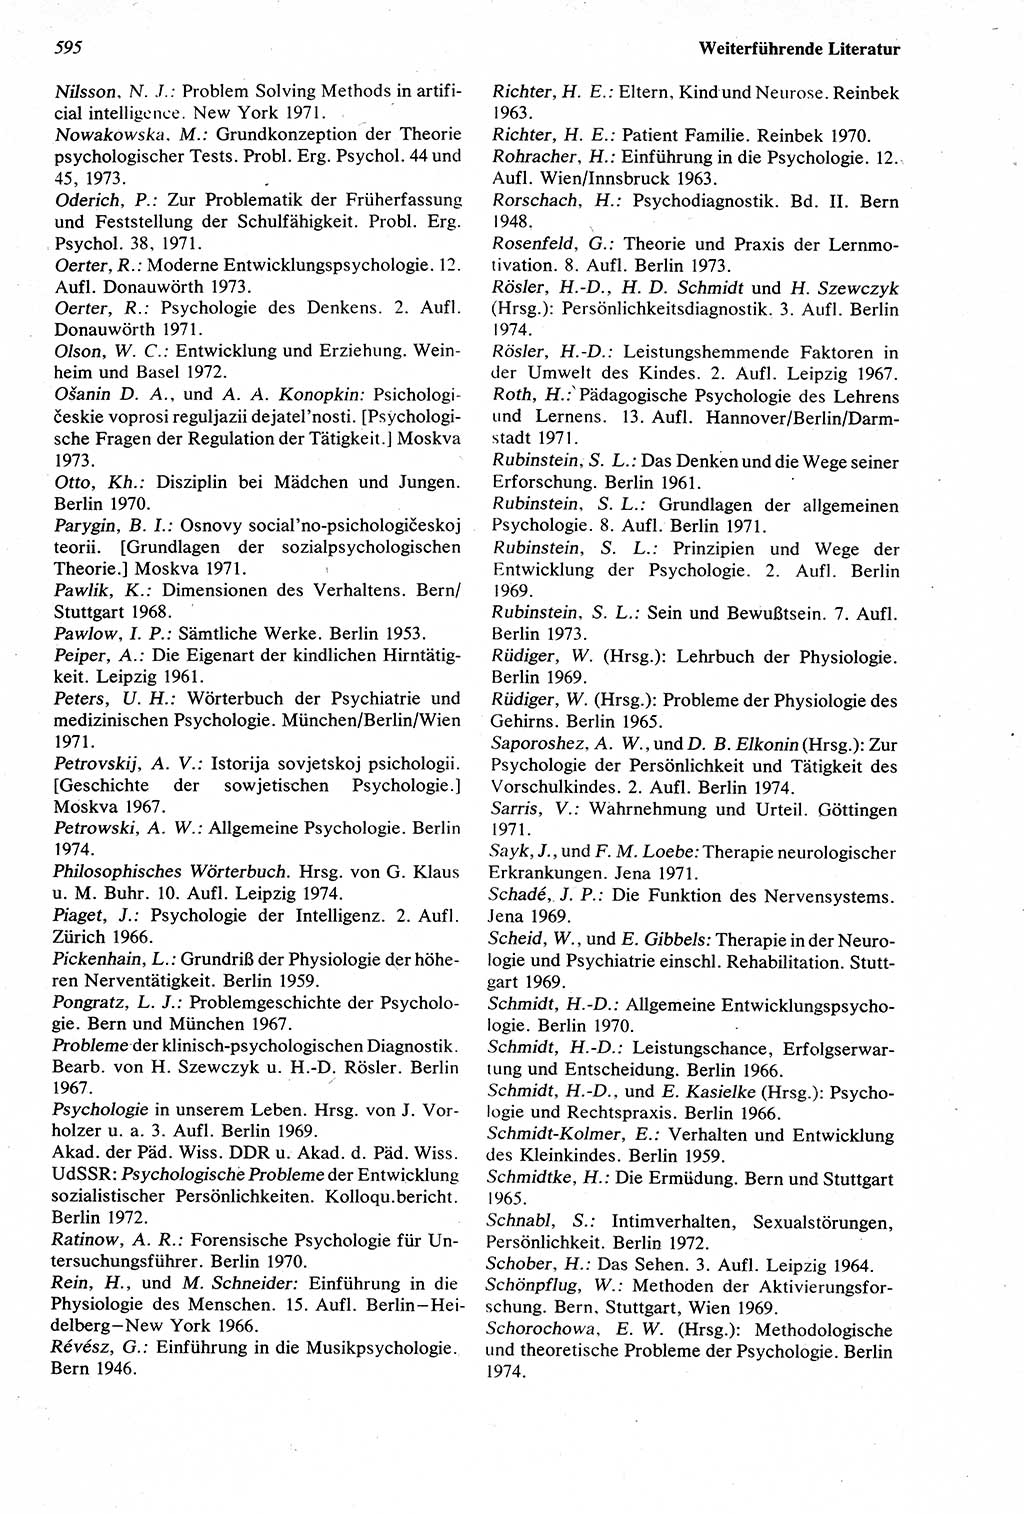 Wörterbuch der Psychologie [Deutsche Demokratische Republik (DDR)] 1976, Seite 595 (Wb. Psych. DDR 1976, S. 595)